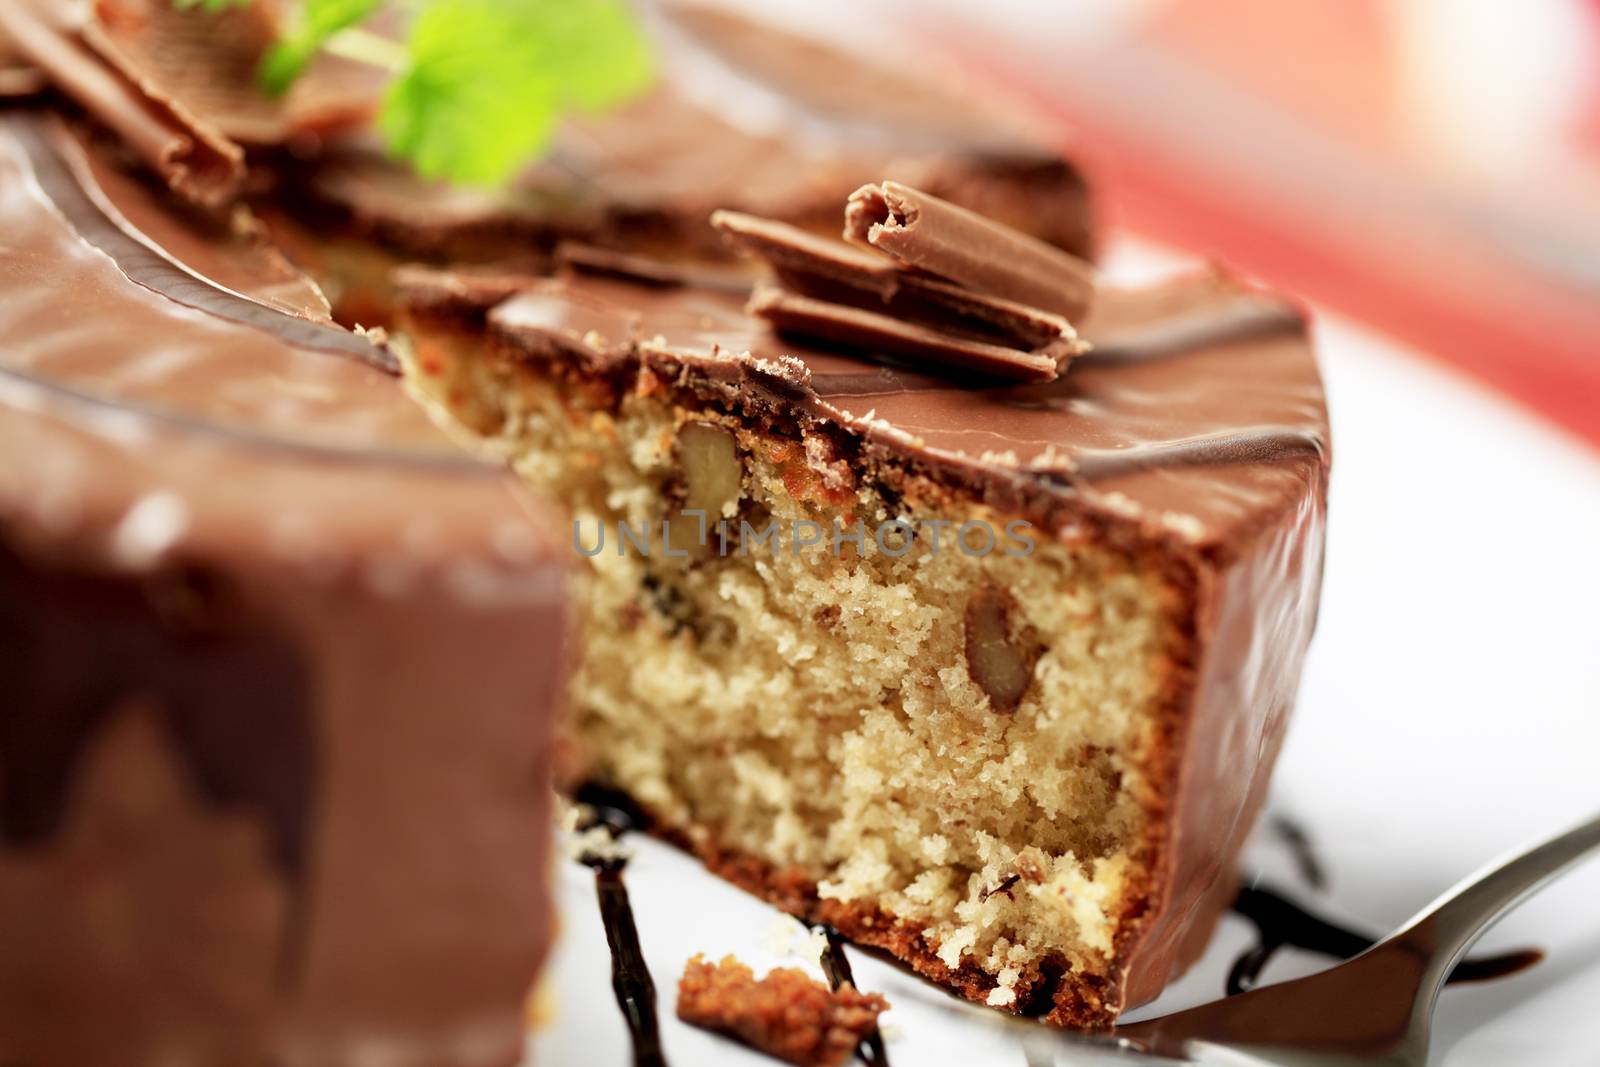 Chocolate-glazed cake by Digifoodstock